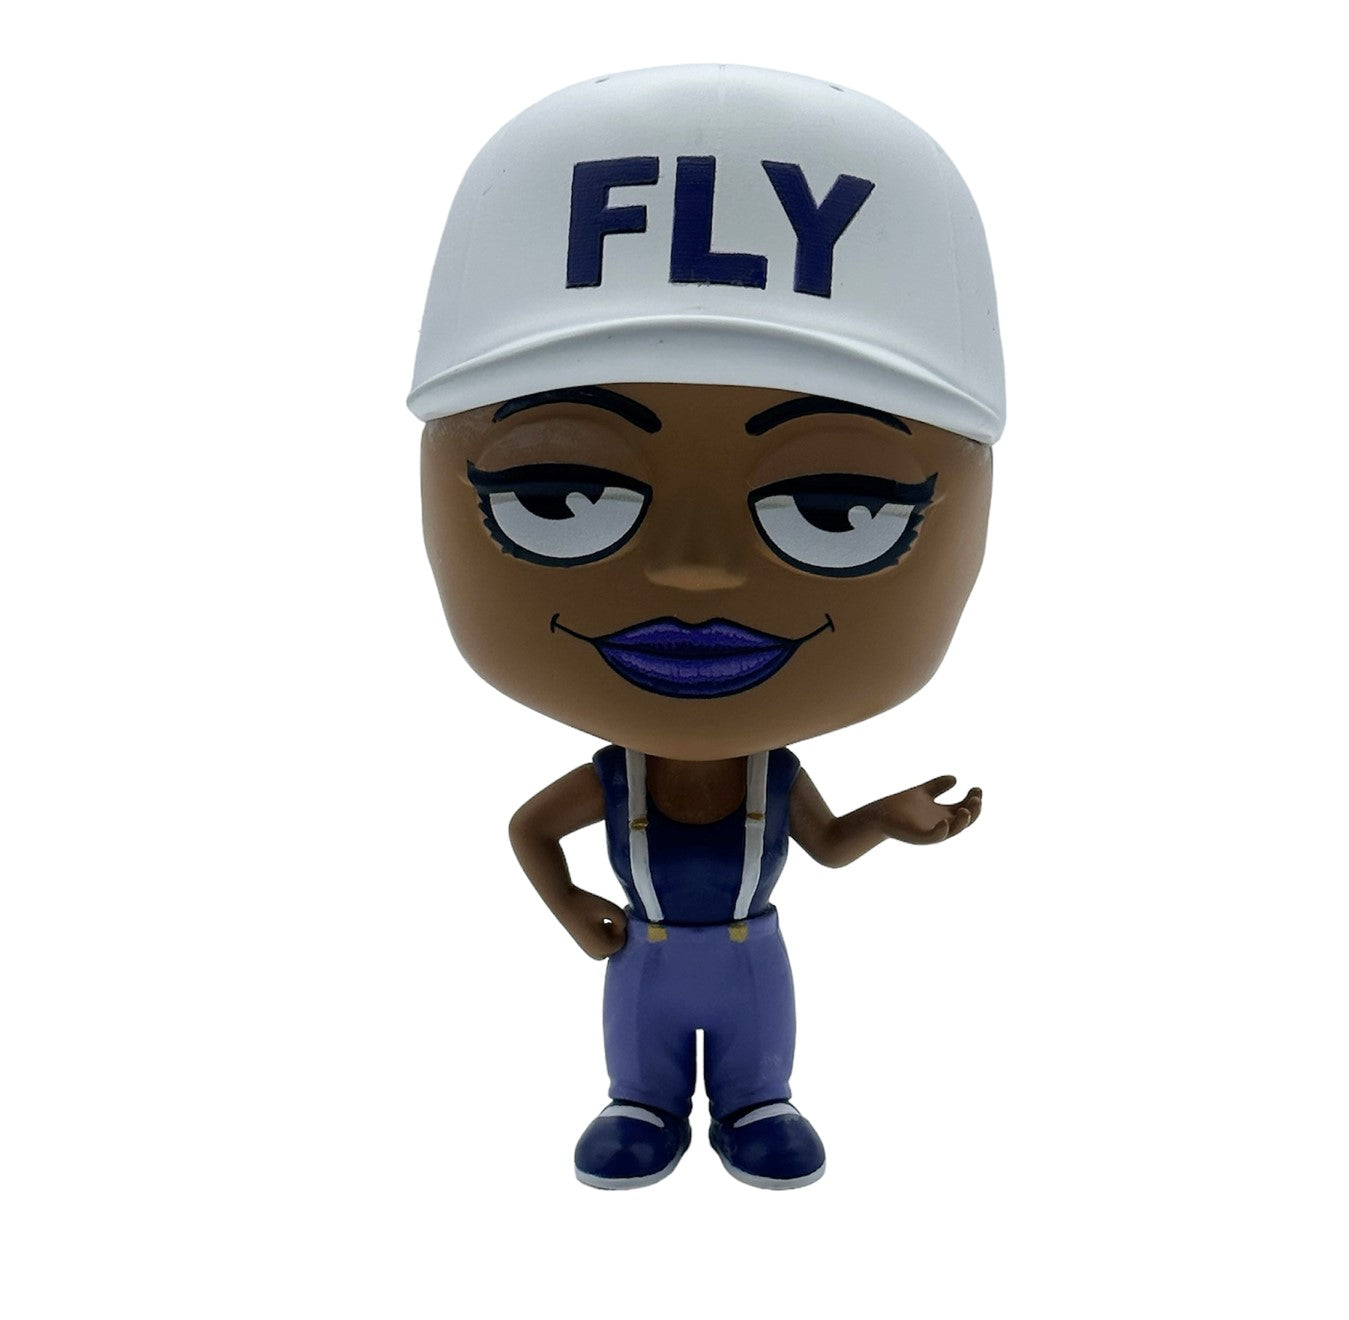 HOMIES™ - Flygirl BIG HEADZ Figure - Series #3